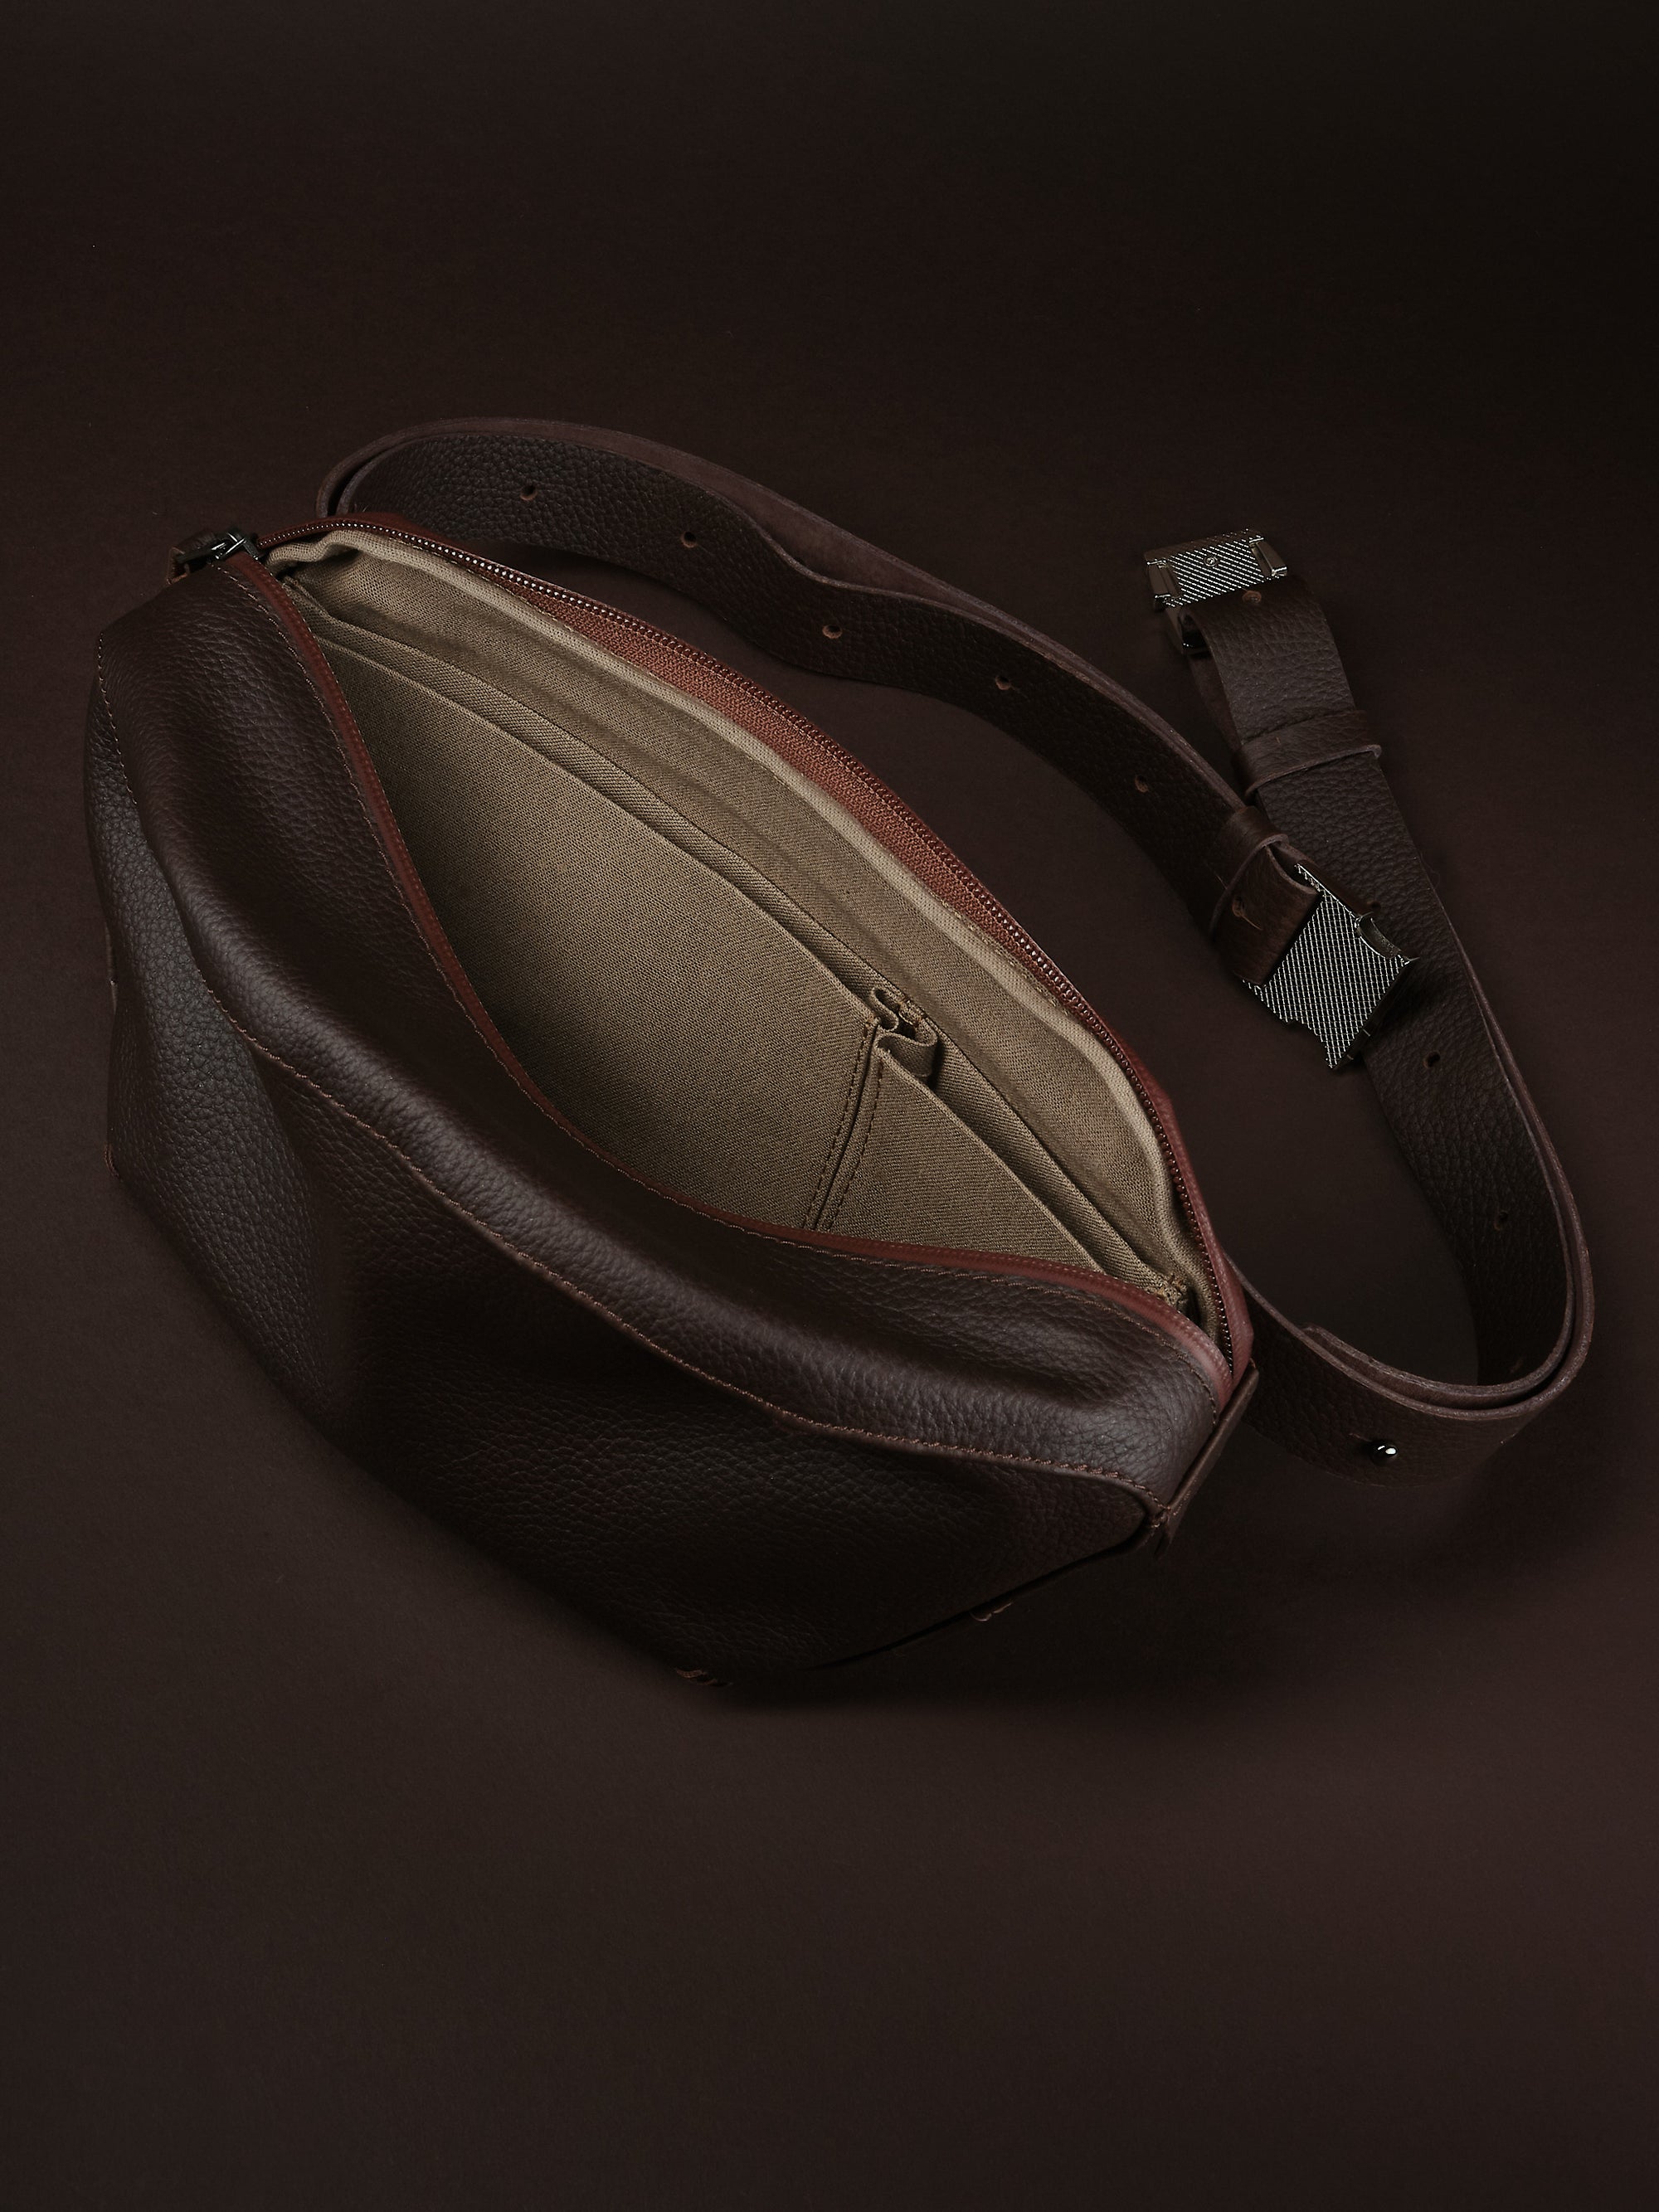 Divider pockets for essentials. Sling Bag for Men Dark Brown by Capra Leather